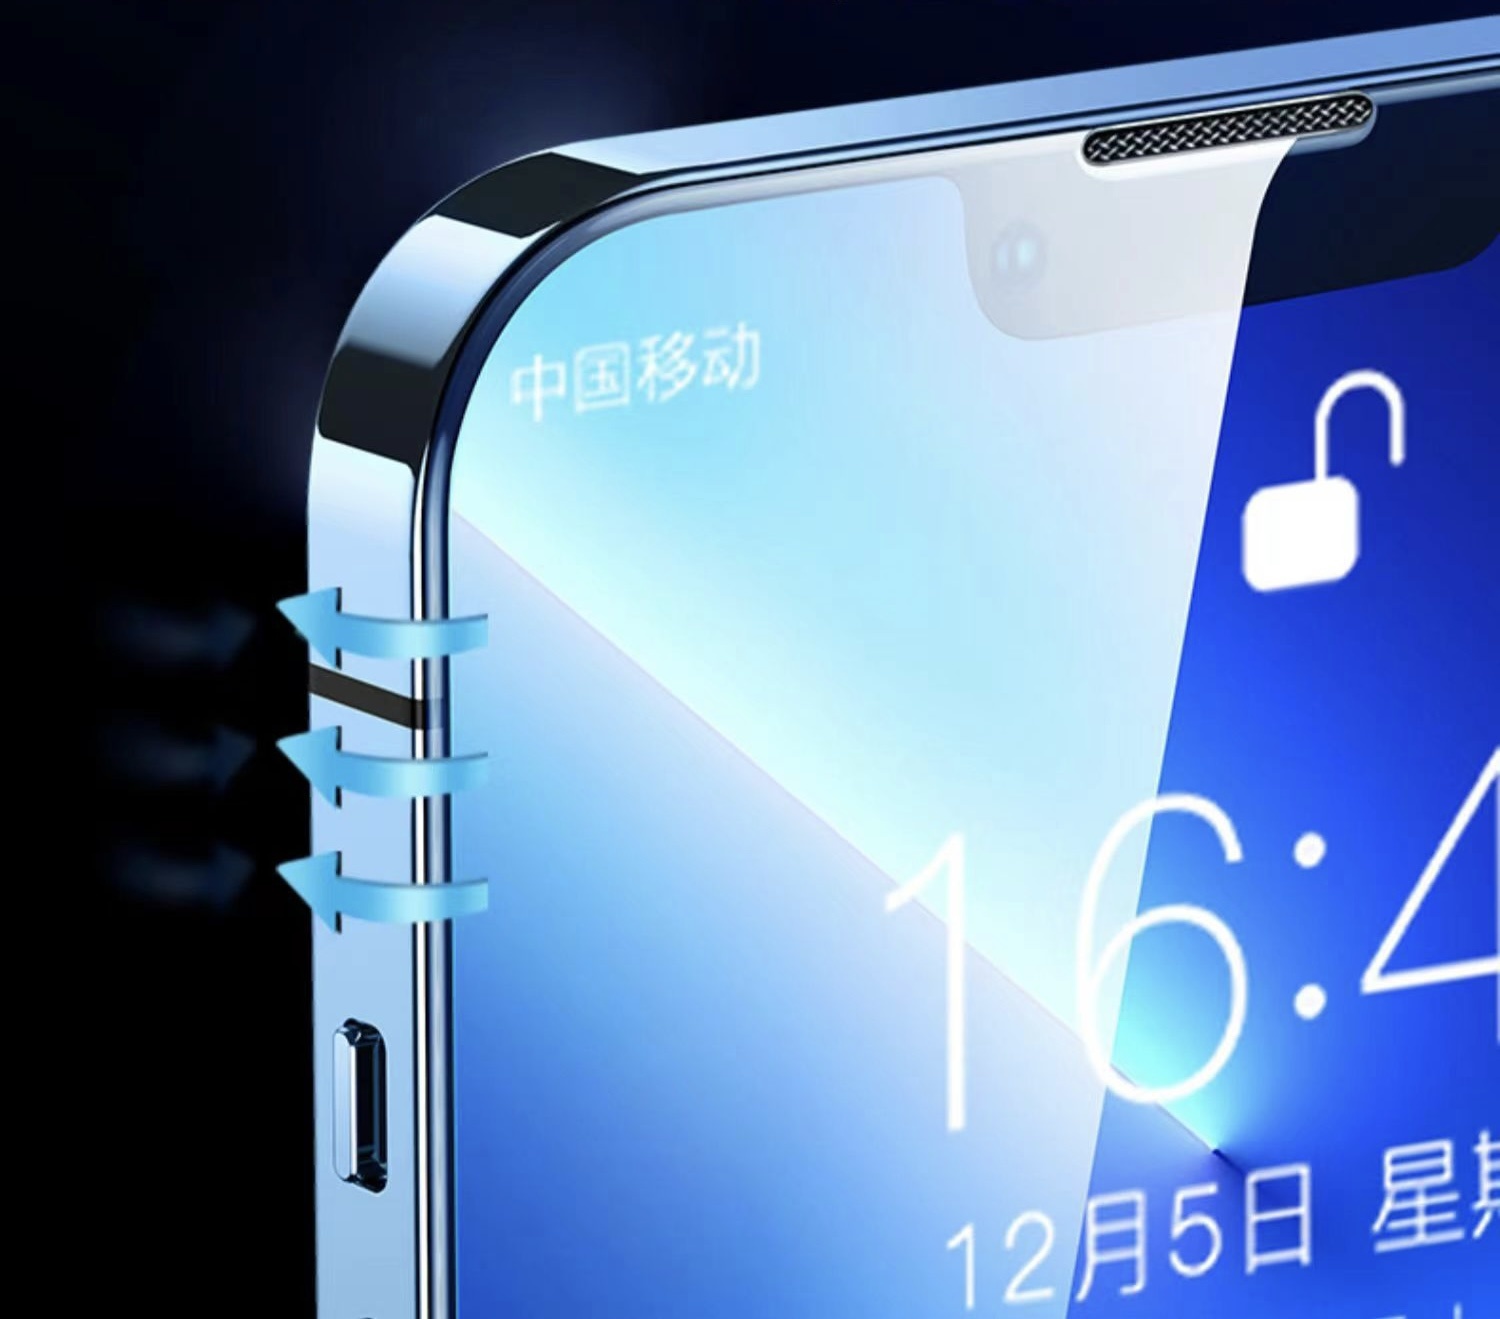 MF Gehard Glass voor Samsung Galaxy A71 / A81 / A91 / S10 Lite / Note 10 Lite / M51